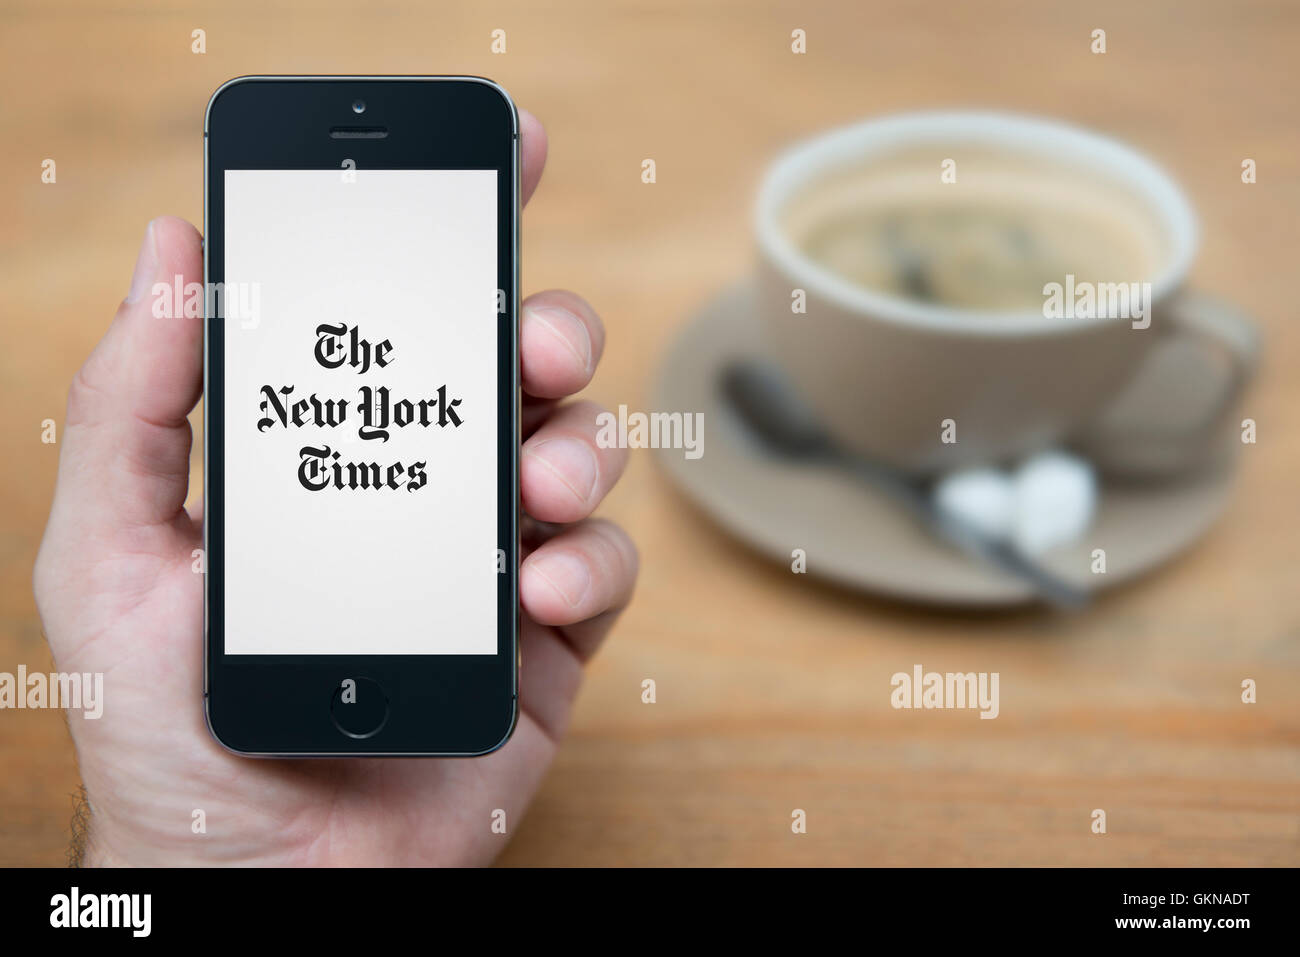 Un uomo guarda al suo iPhone che visualizza il New York Times logo, mentre sat con una tazza di caffè (solo uso editoriale). Foto Stock